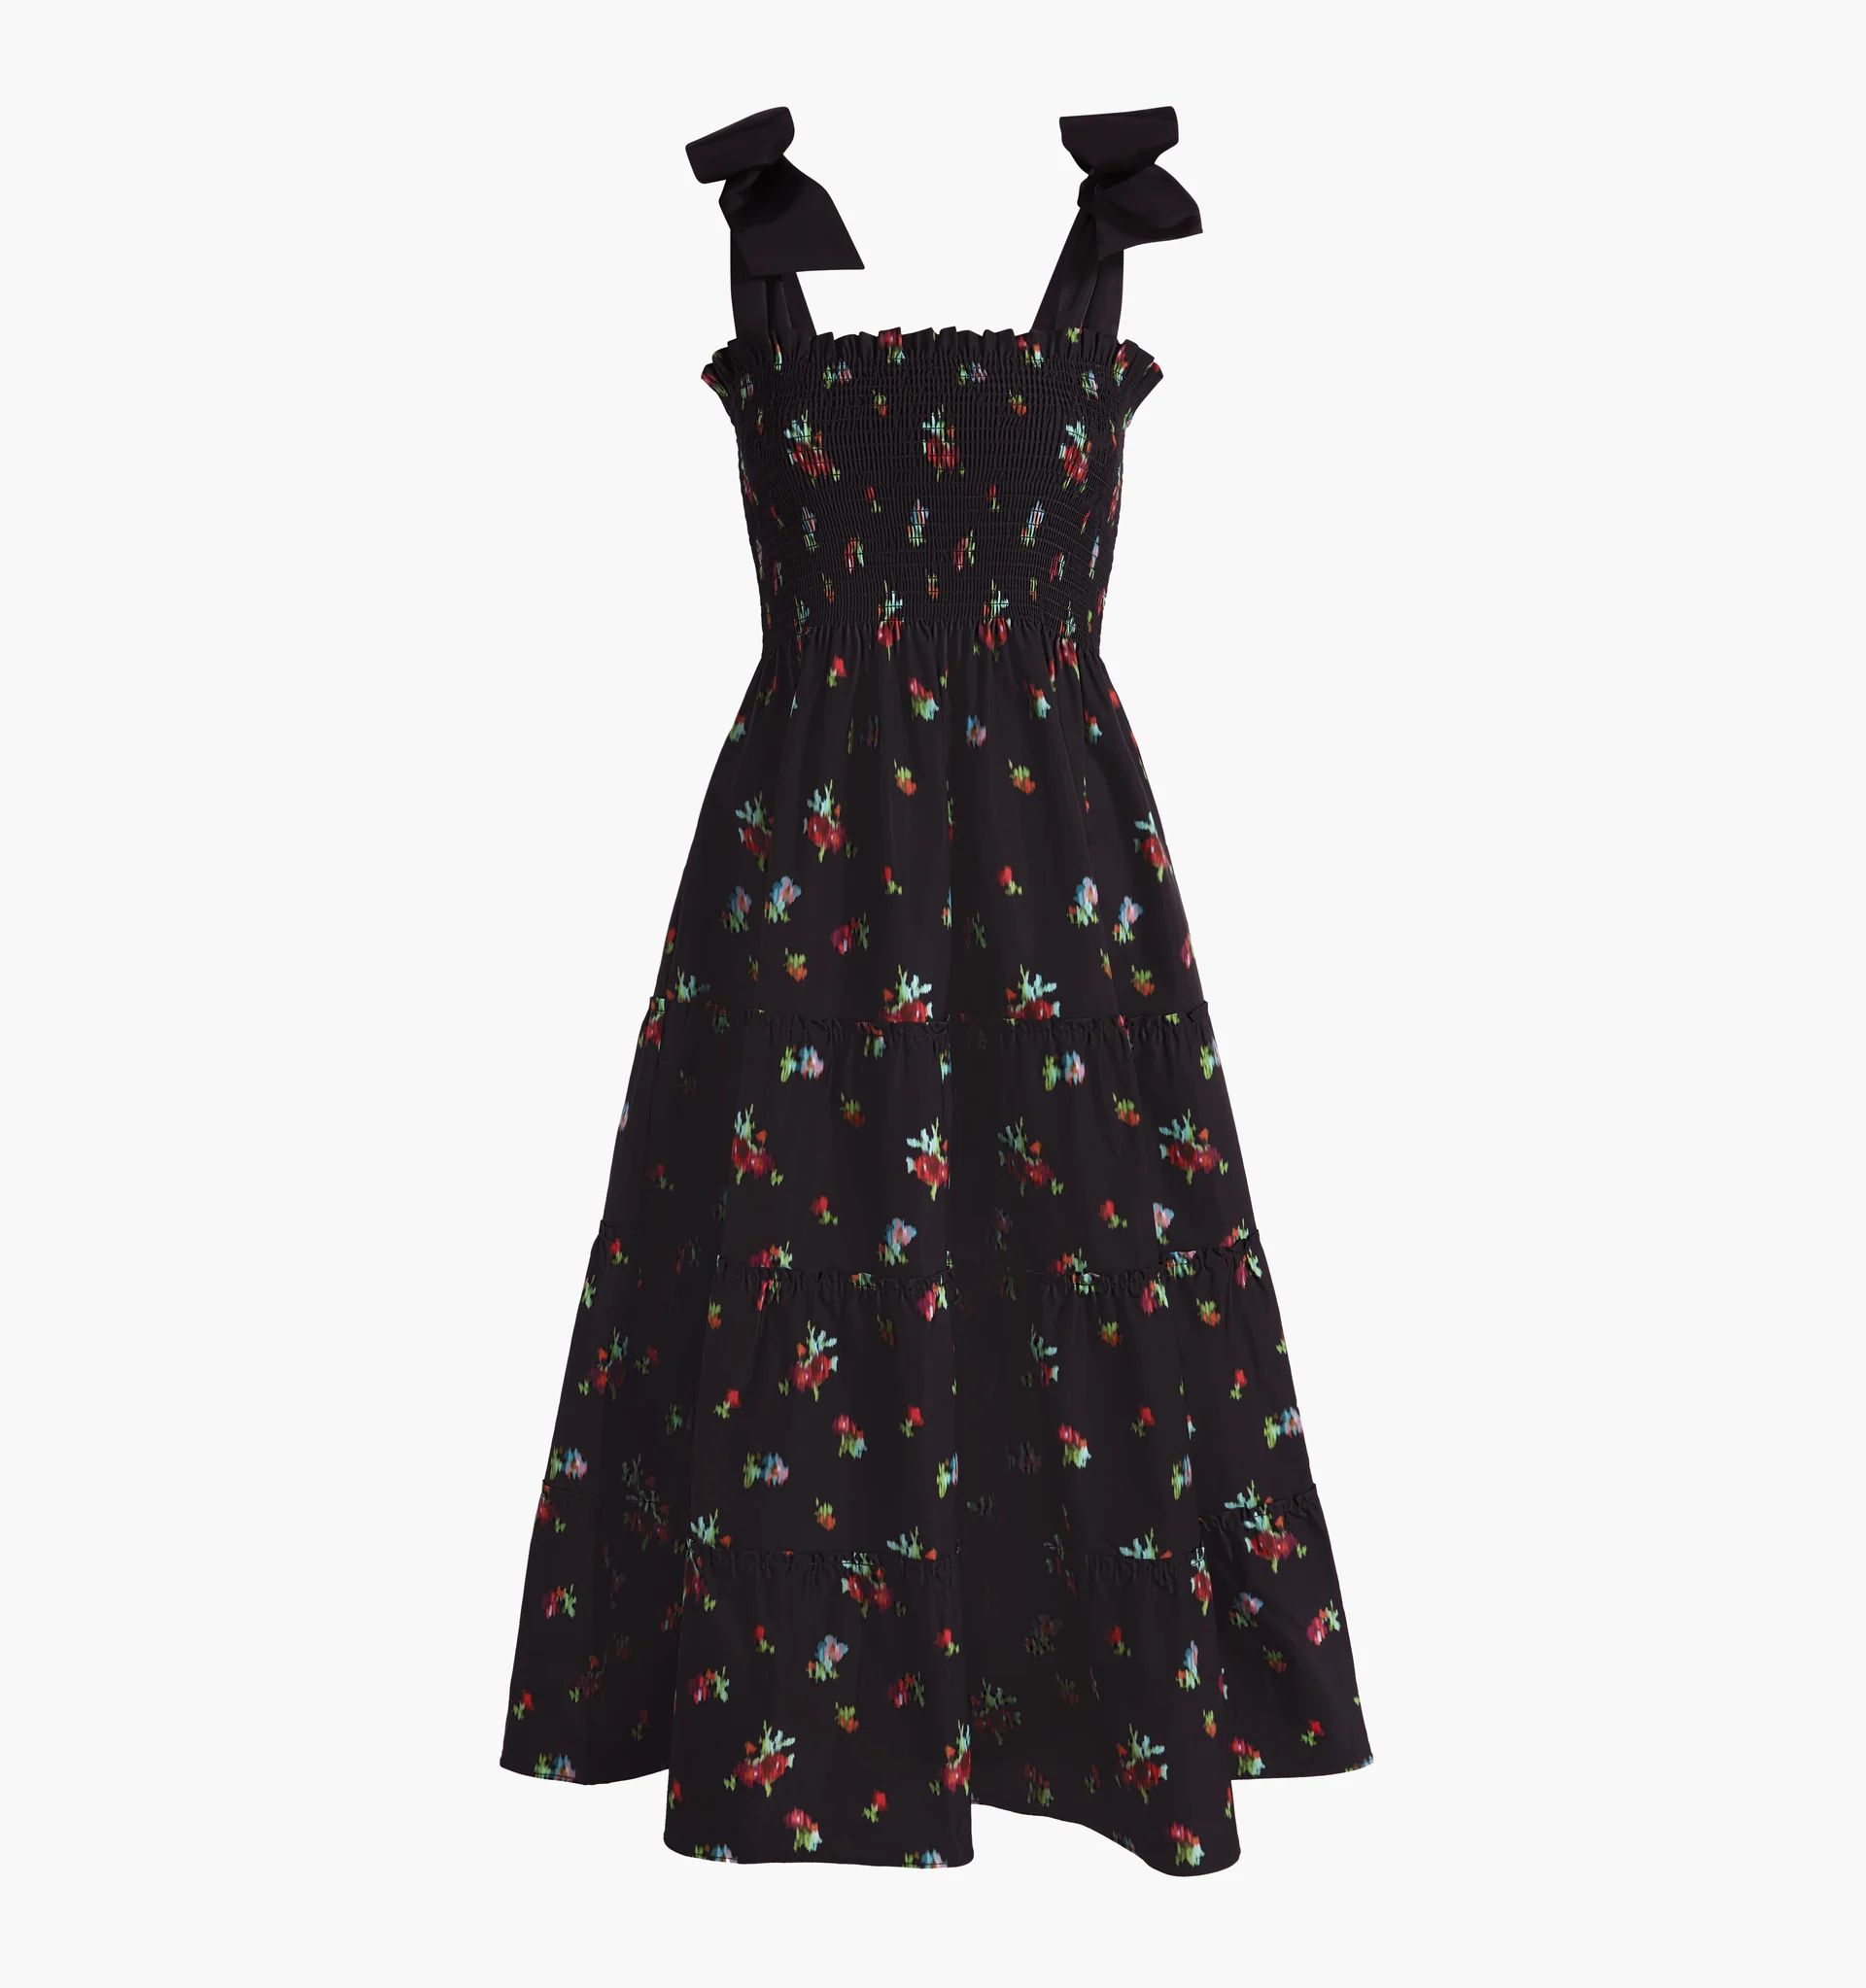 The Ribbon Ellie Nap Dress - Black Ikat Floral Taffeta | Hill House Home